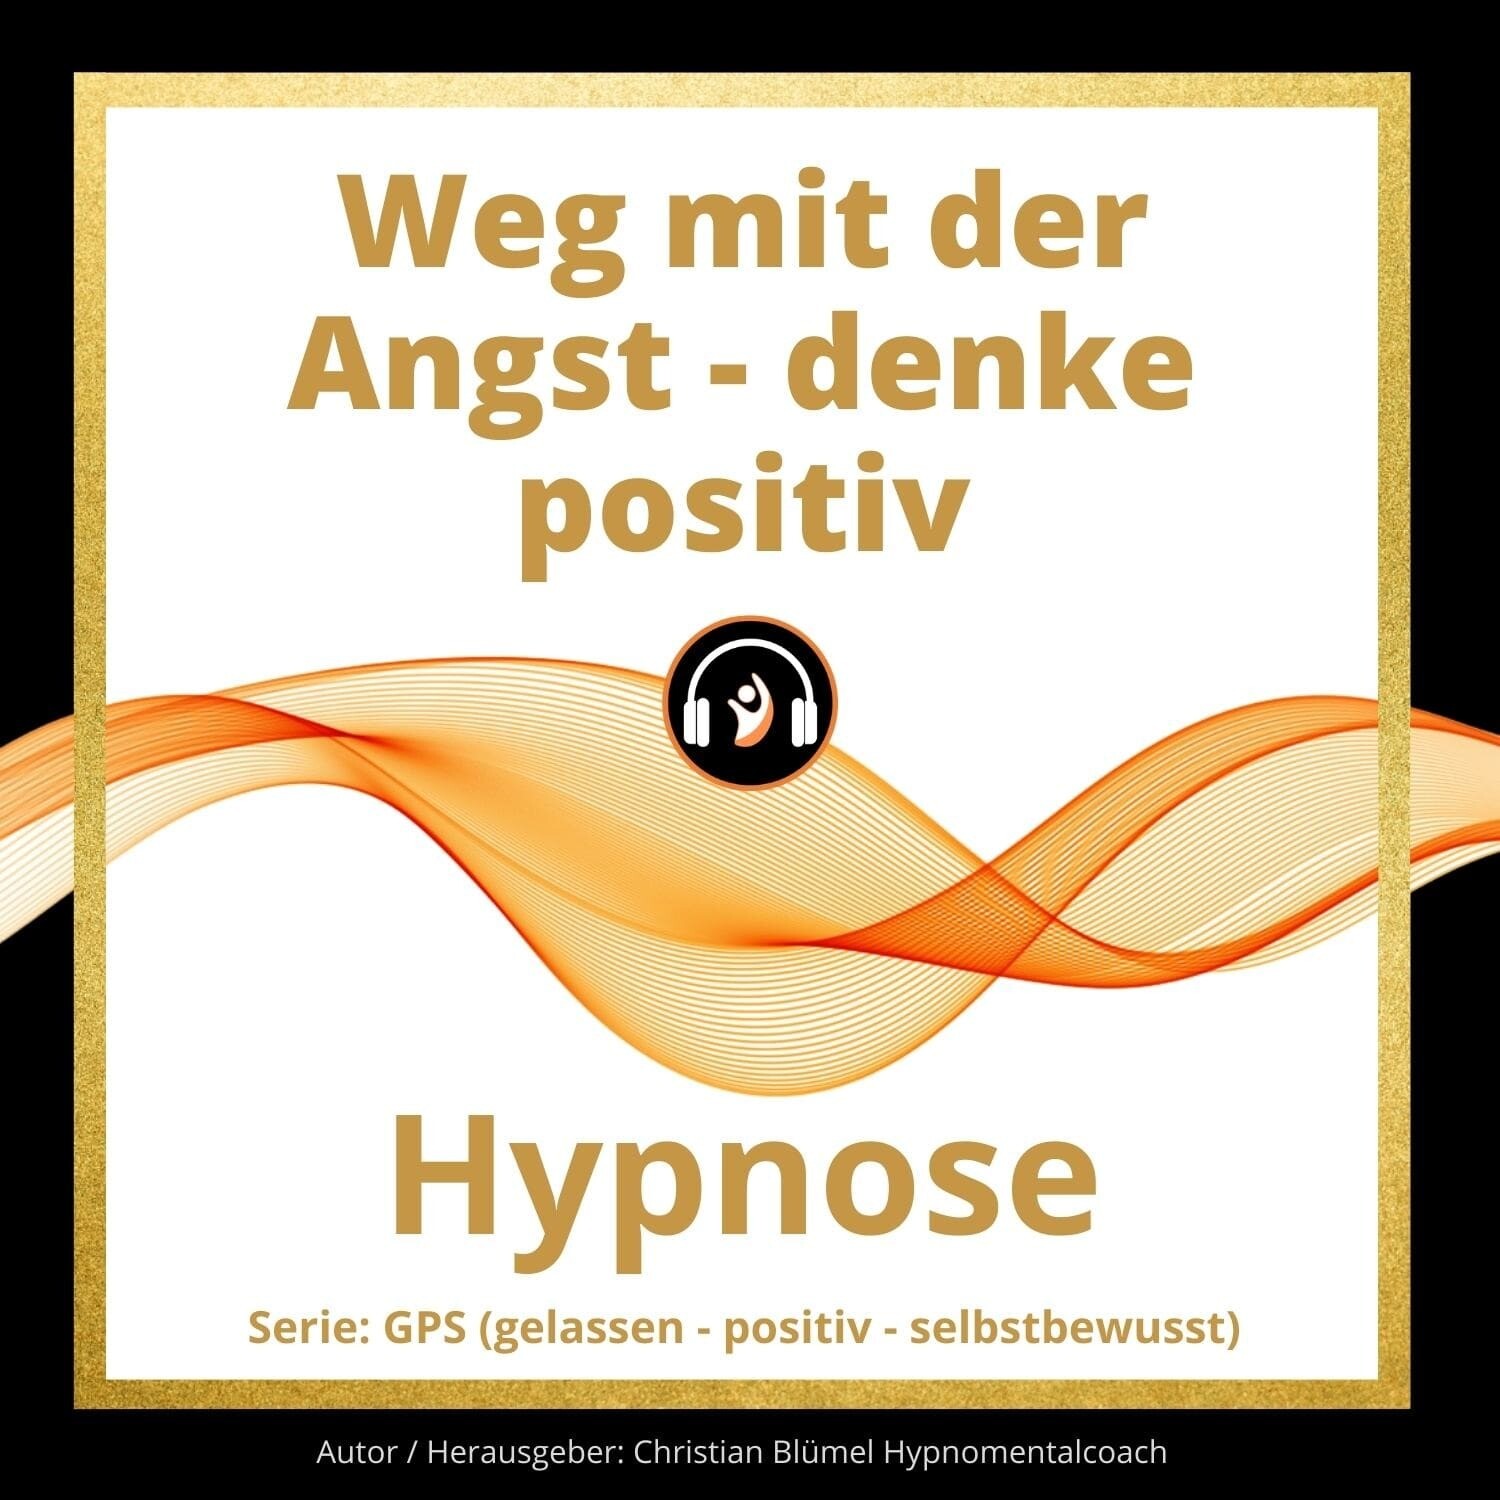 Audio Hypnose: Weg mit der Angst - denke positiv - GPS Hypnose